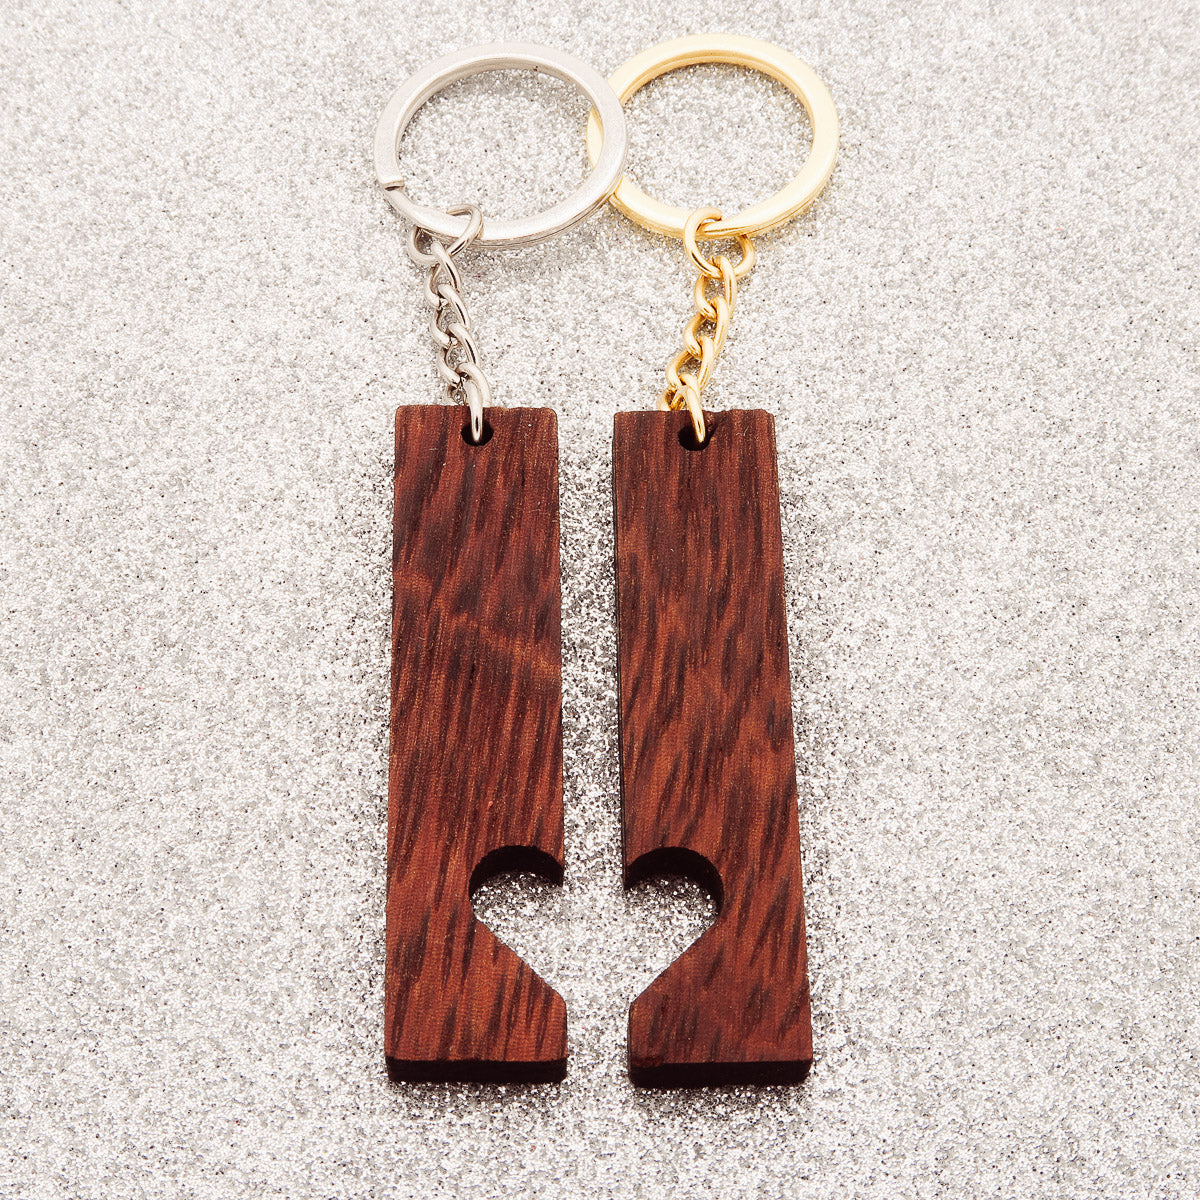 Kumppanin avain riipus asettaa "Heart To Heart To Walnut", joka on valmistettu puusta - kaiverrusta